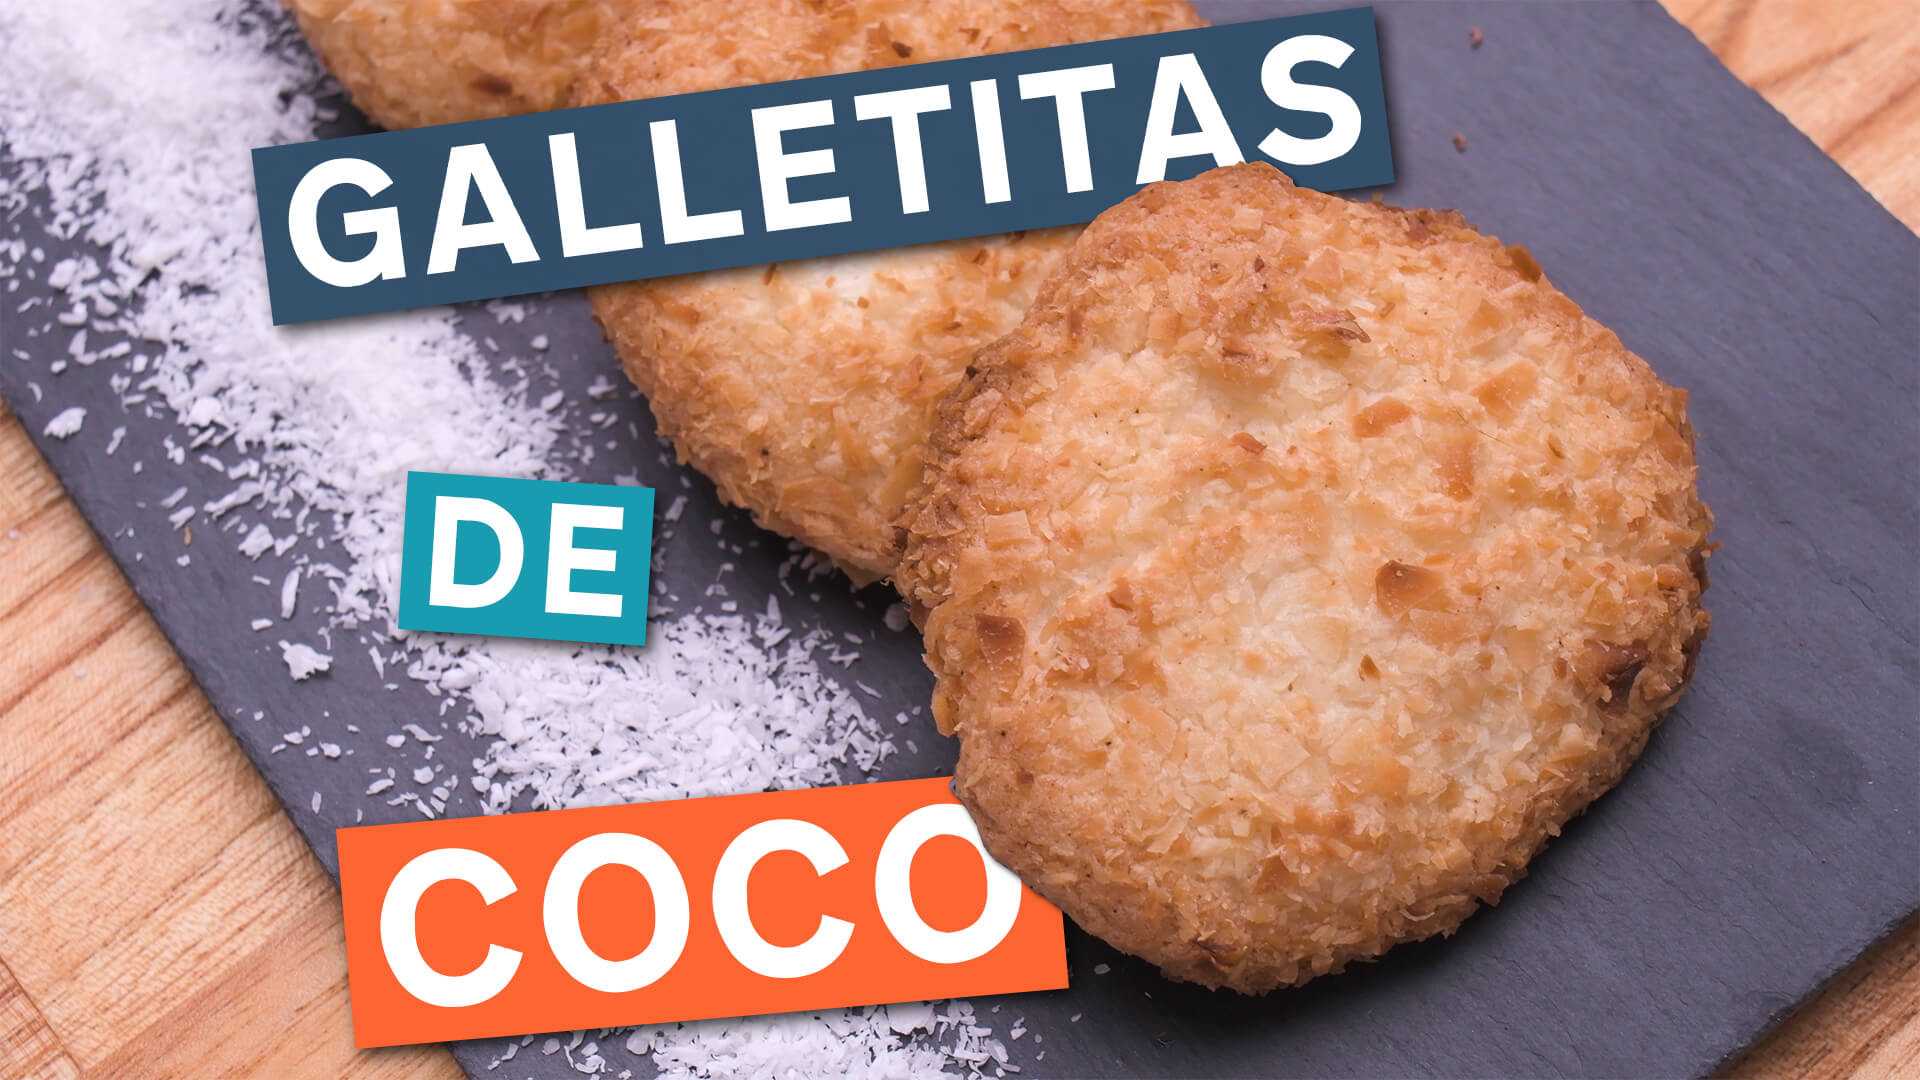 Galletitas de Coco